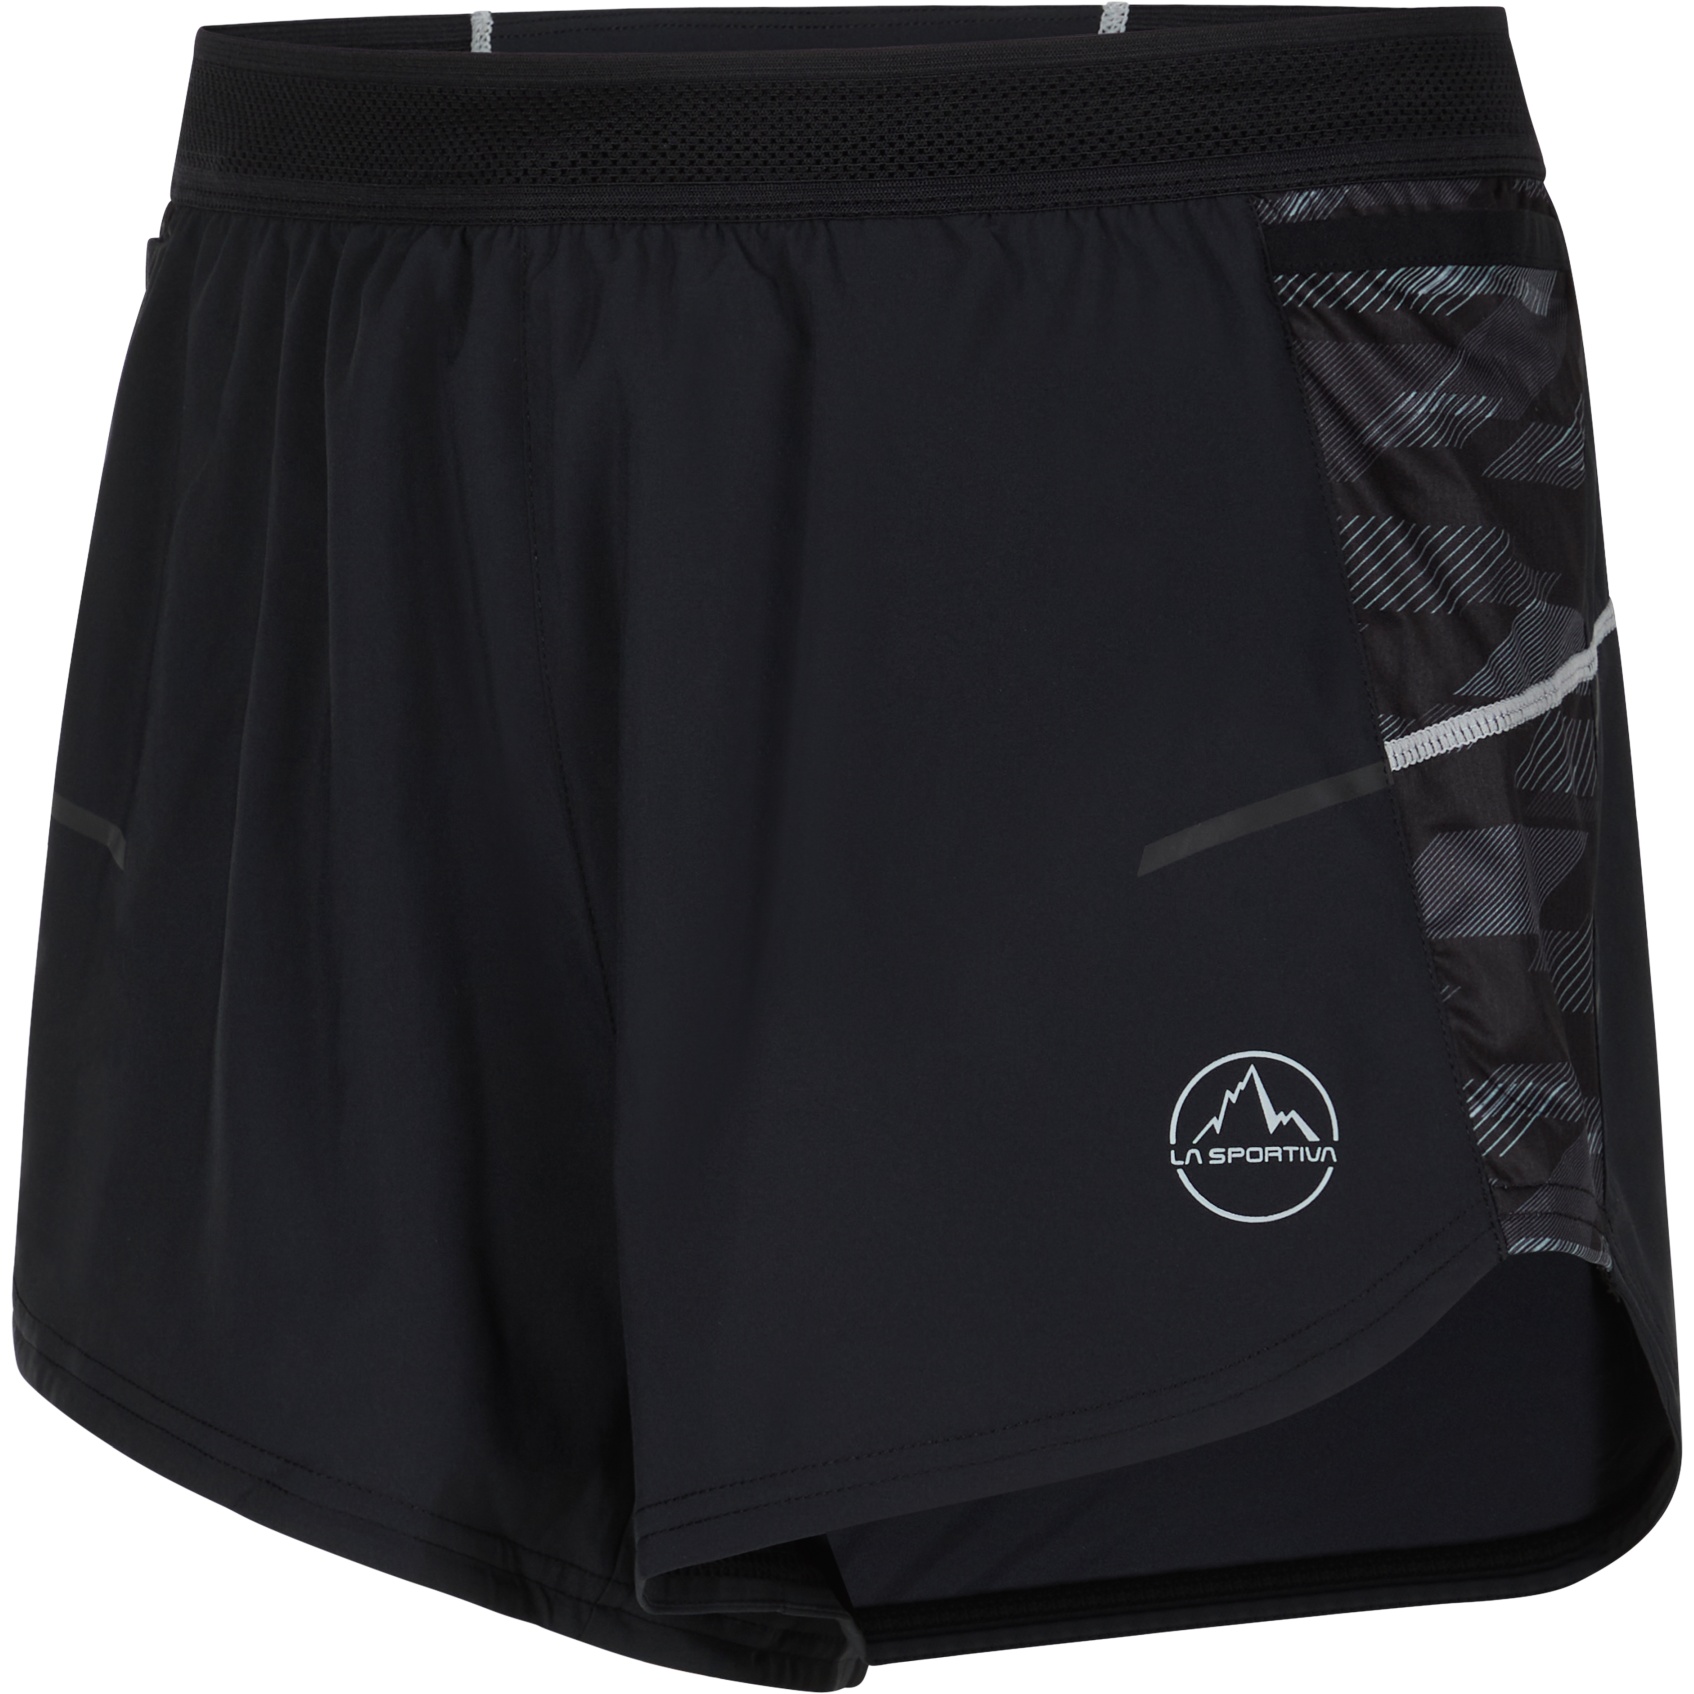 Produktbild von La Sportiva Auster Shorts Herren - Black/Cloud